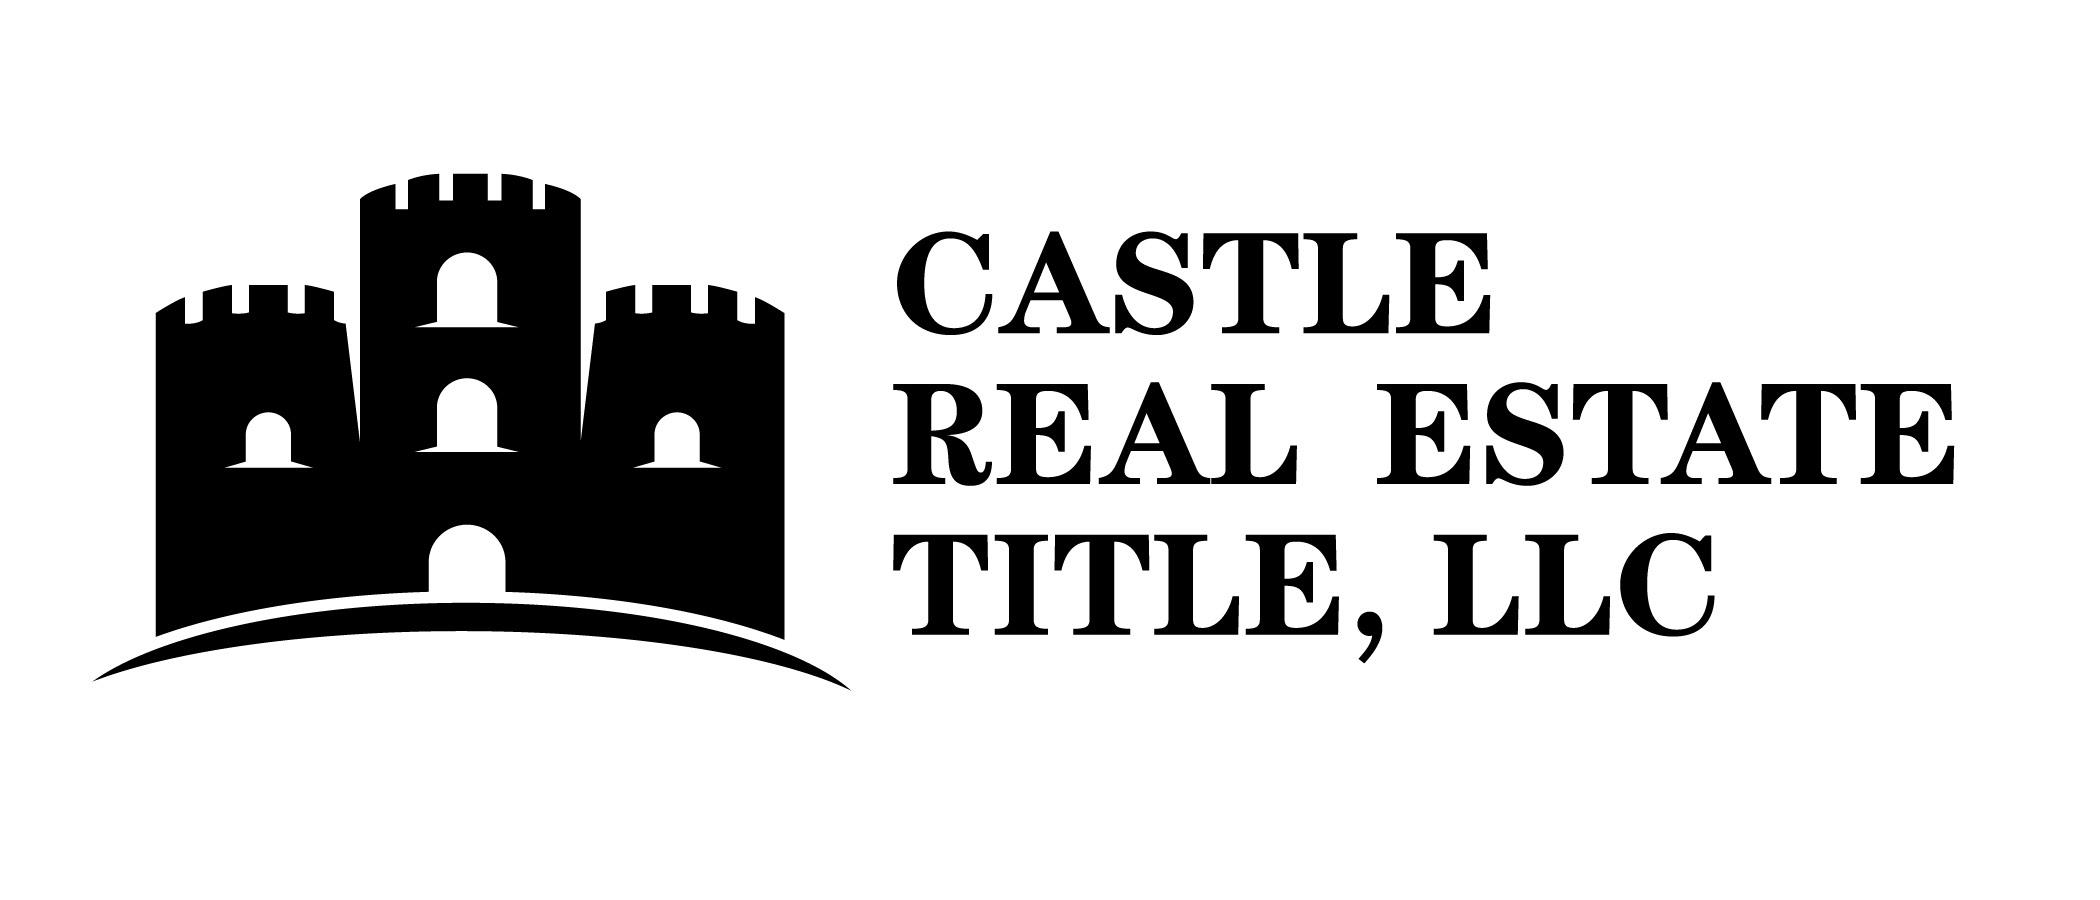 Castle Real Estate - LOGO.jpg